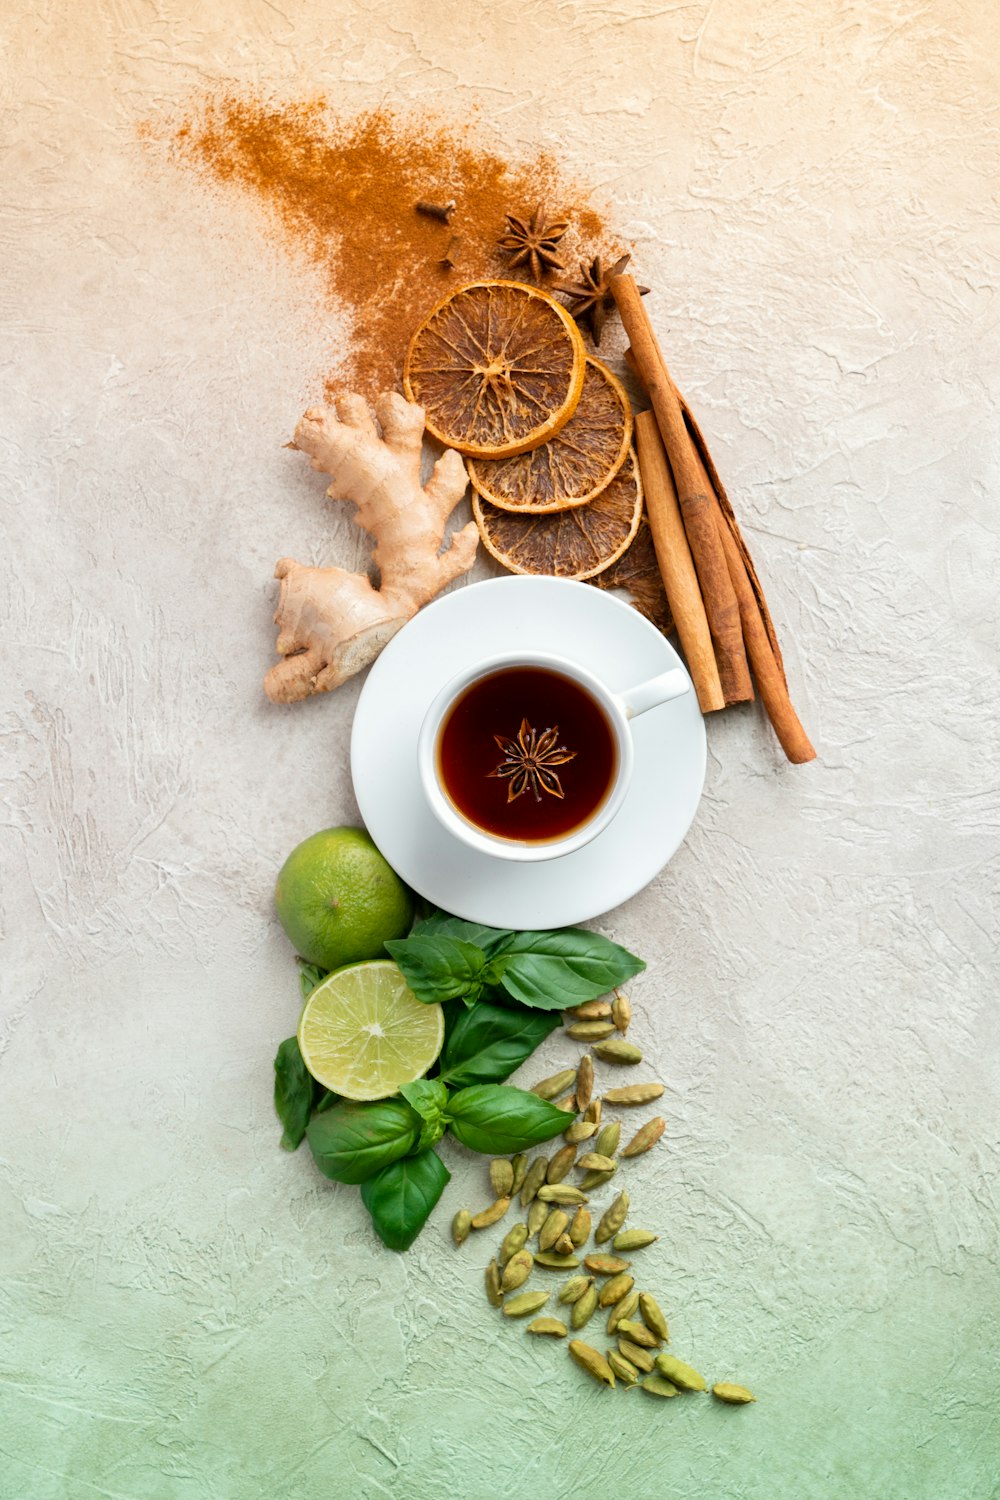 a cup of tea next to cinnamon, limes, limes and cinnamon sticks